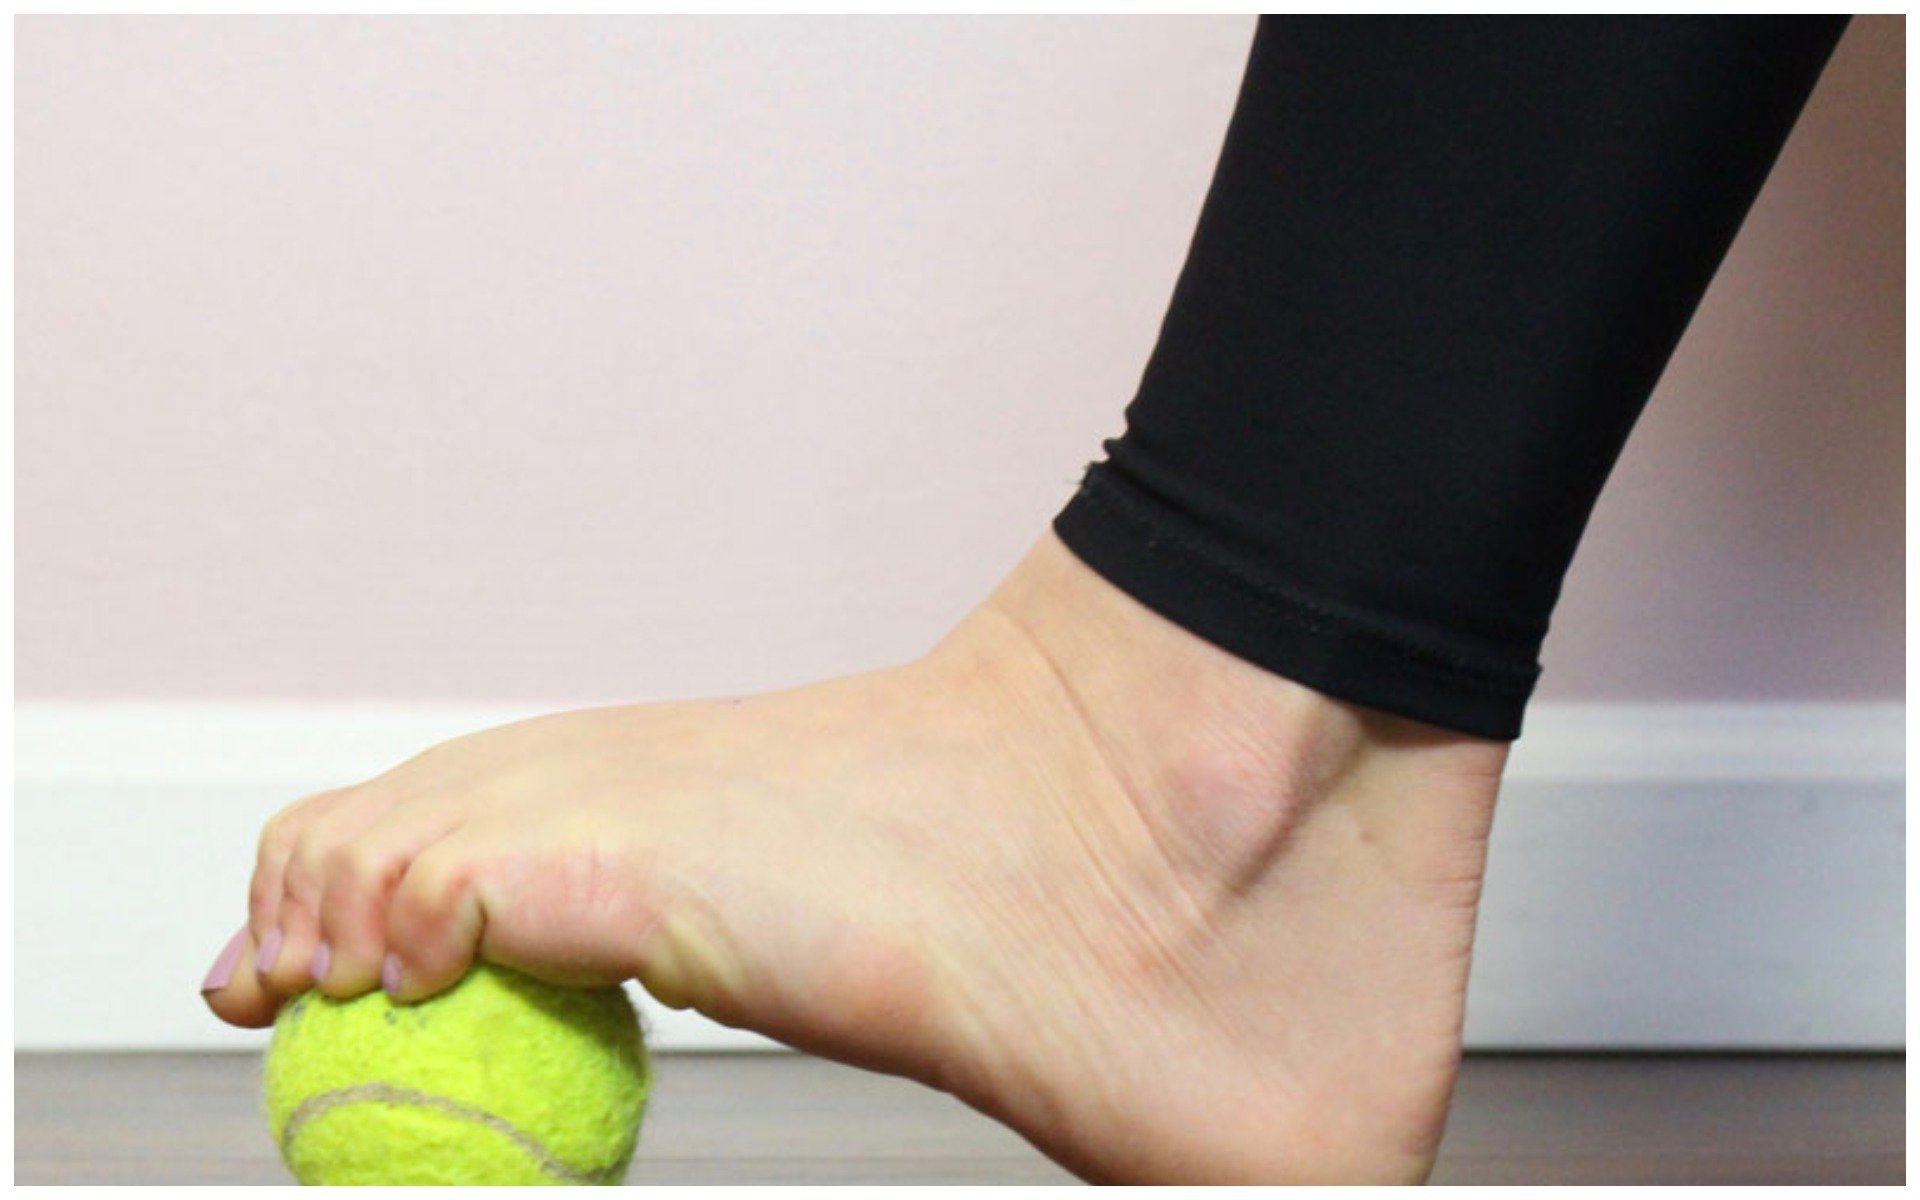 Развести пятки. МФР стопы с мячом. Упражнения с мячиком для стопы. Упражнения для стопы с мячиком теннисным. Теннисный мячик занятие для ног.